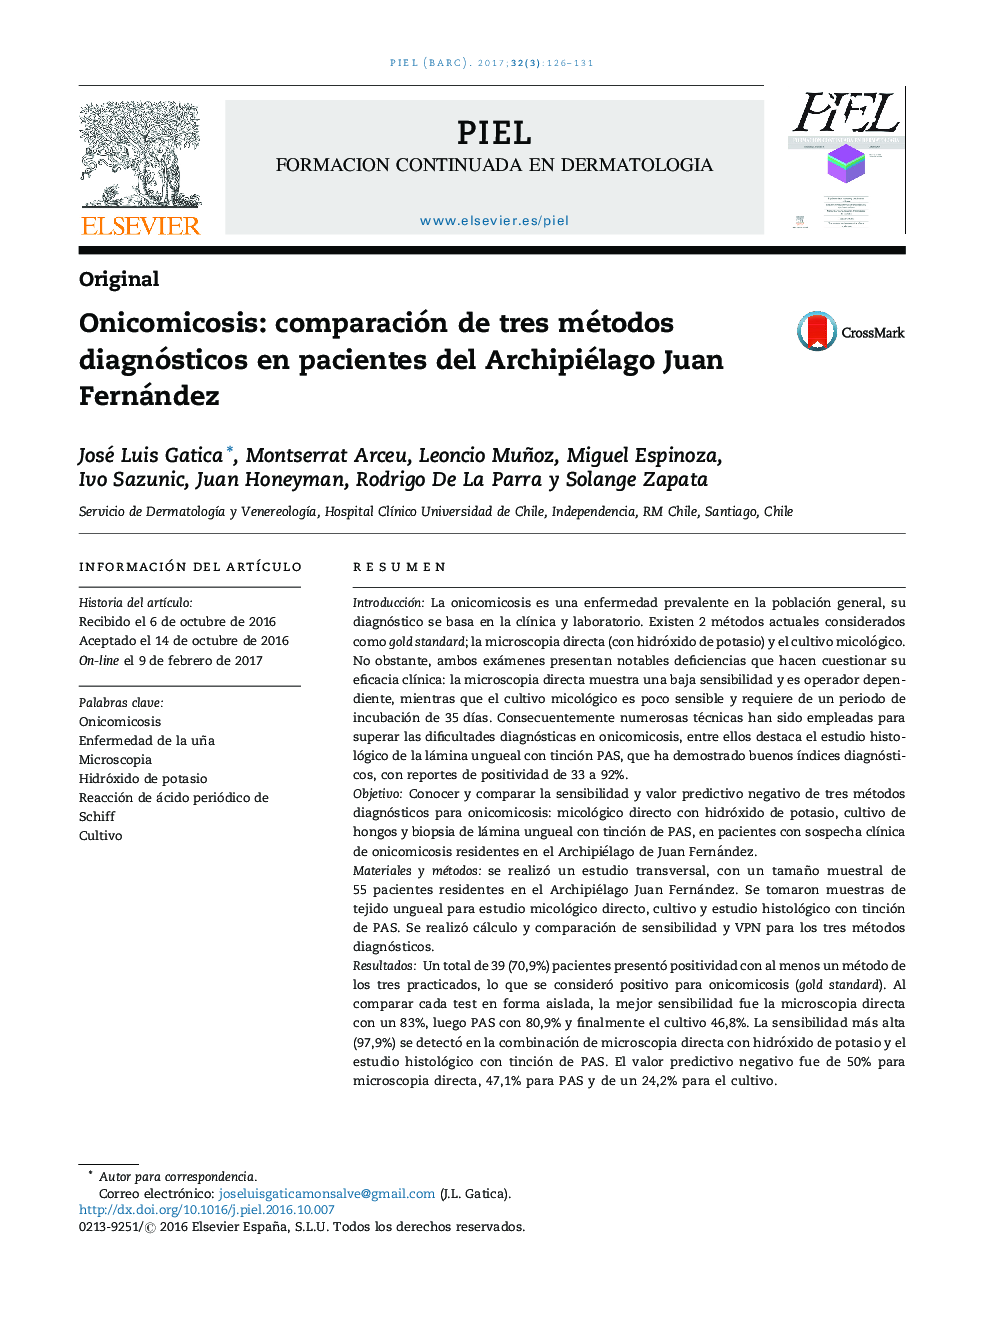 Onicomicosis: comparación de tres métodos diagnósticos en pacientes del Archipiélago Juan Fernández